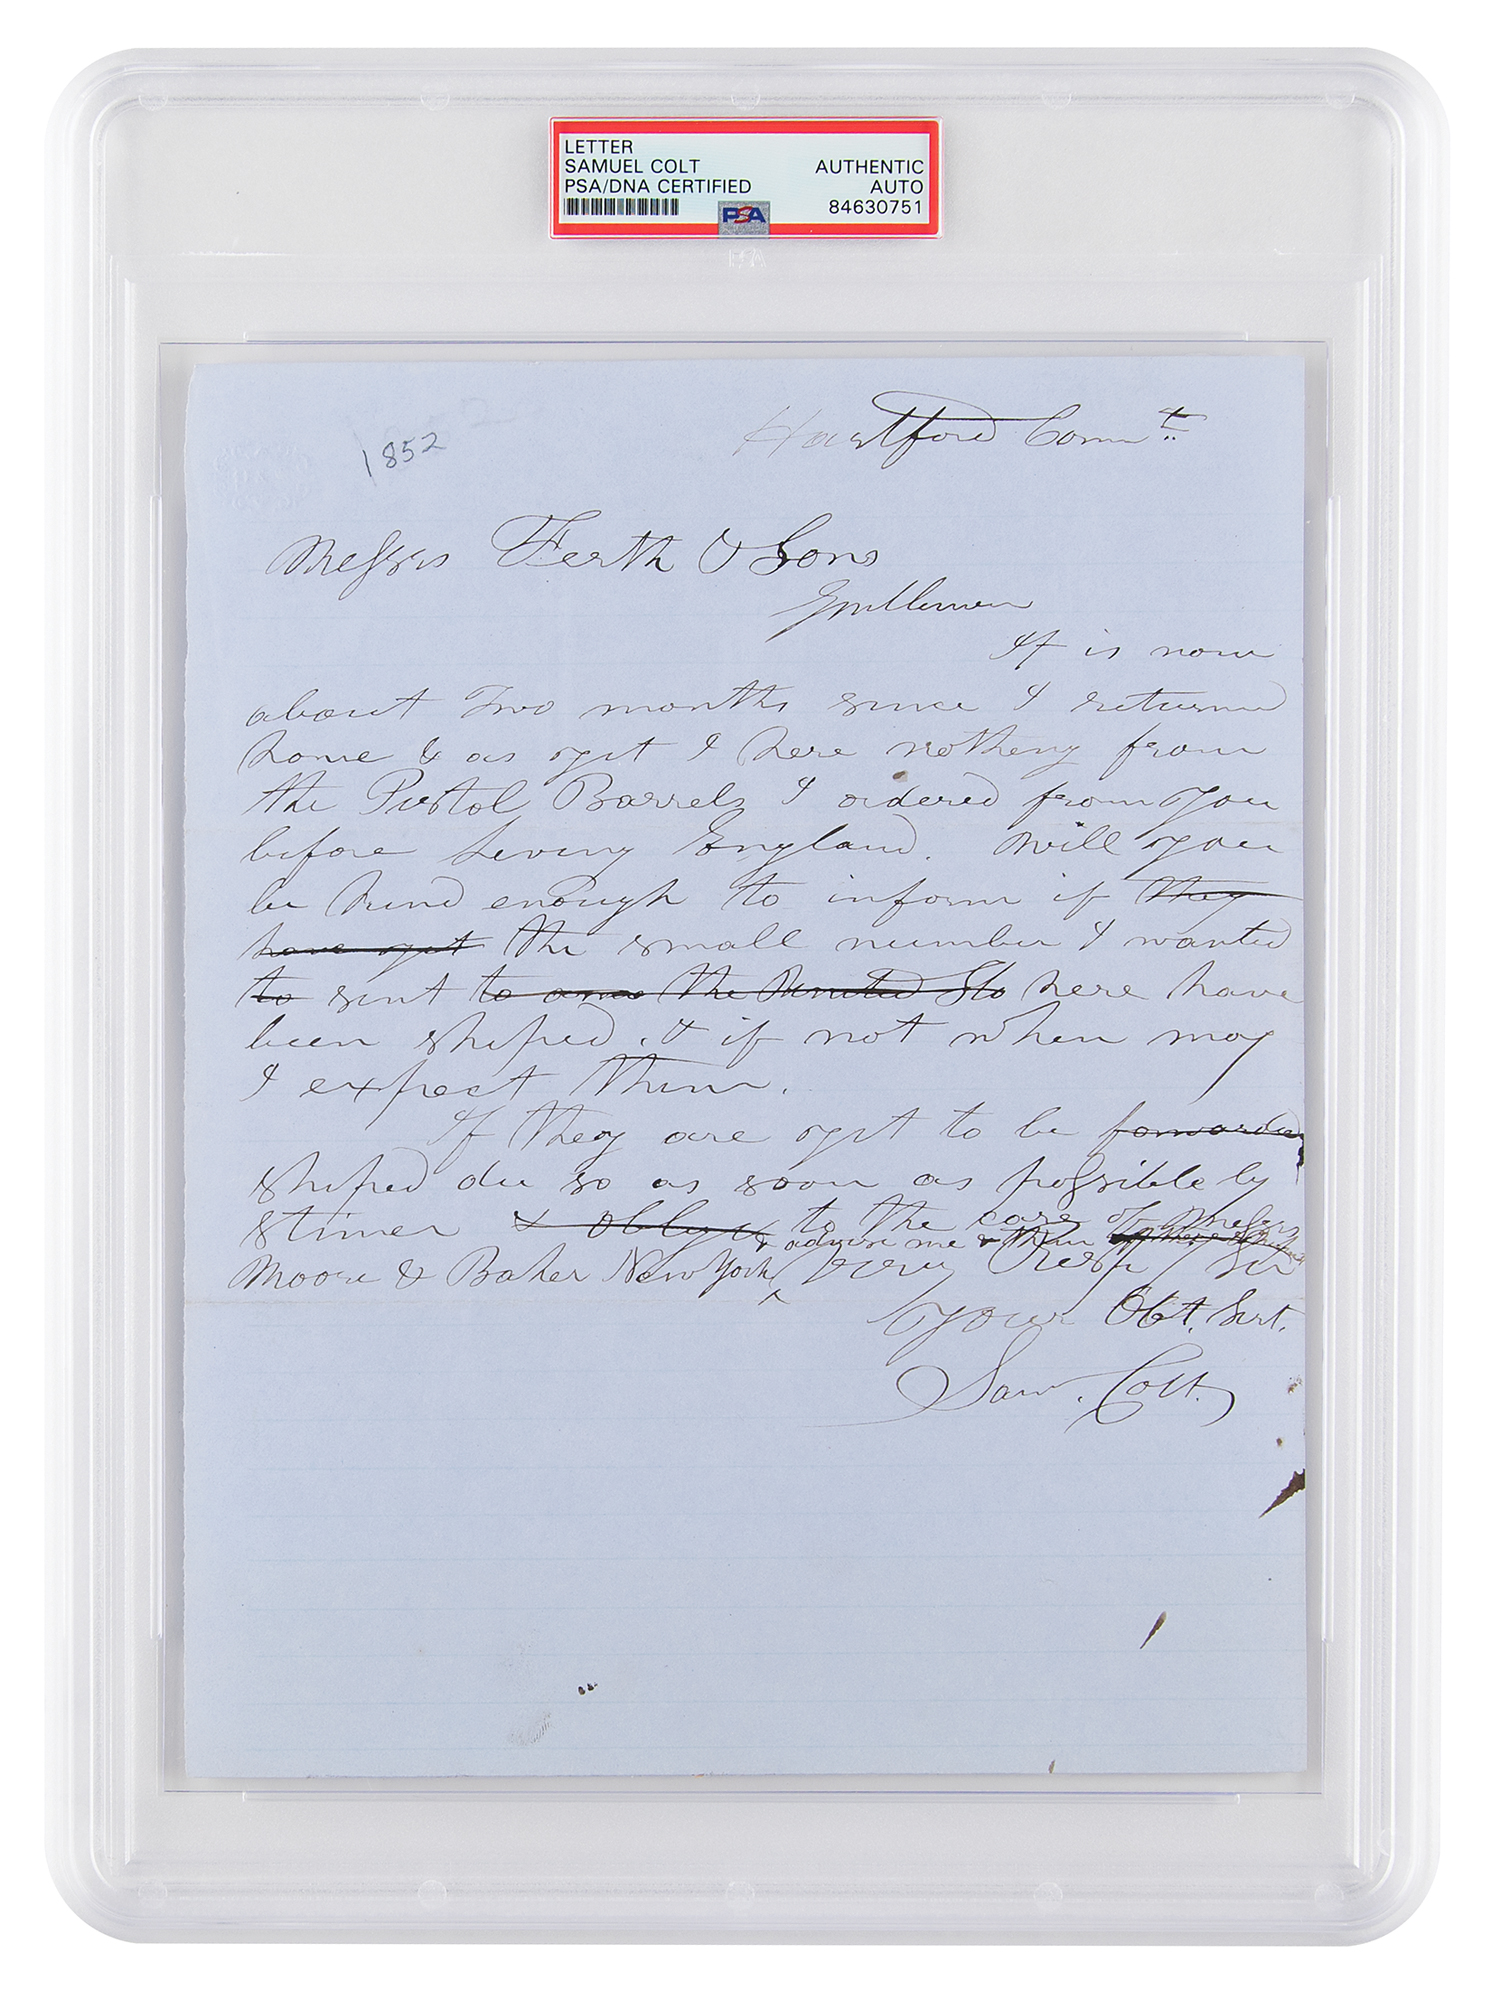 Lot #6109 Samuel Colt Autograph Letter Signed